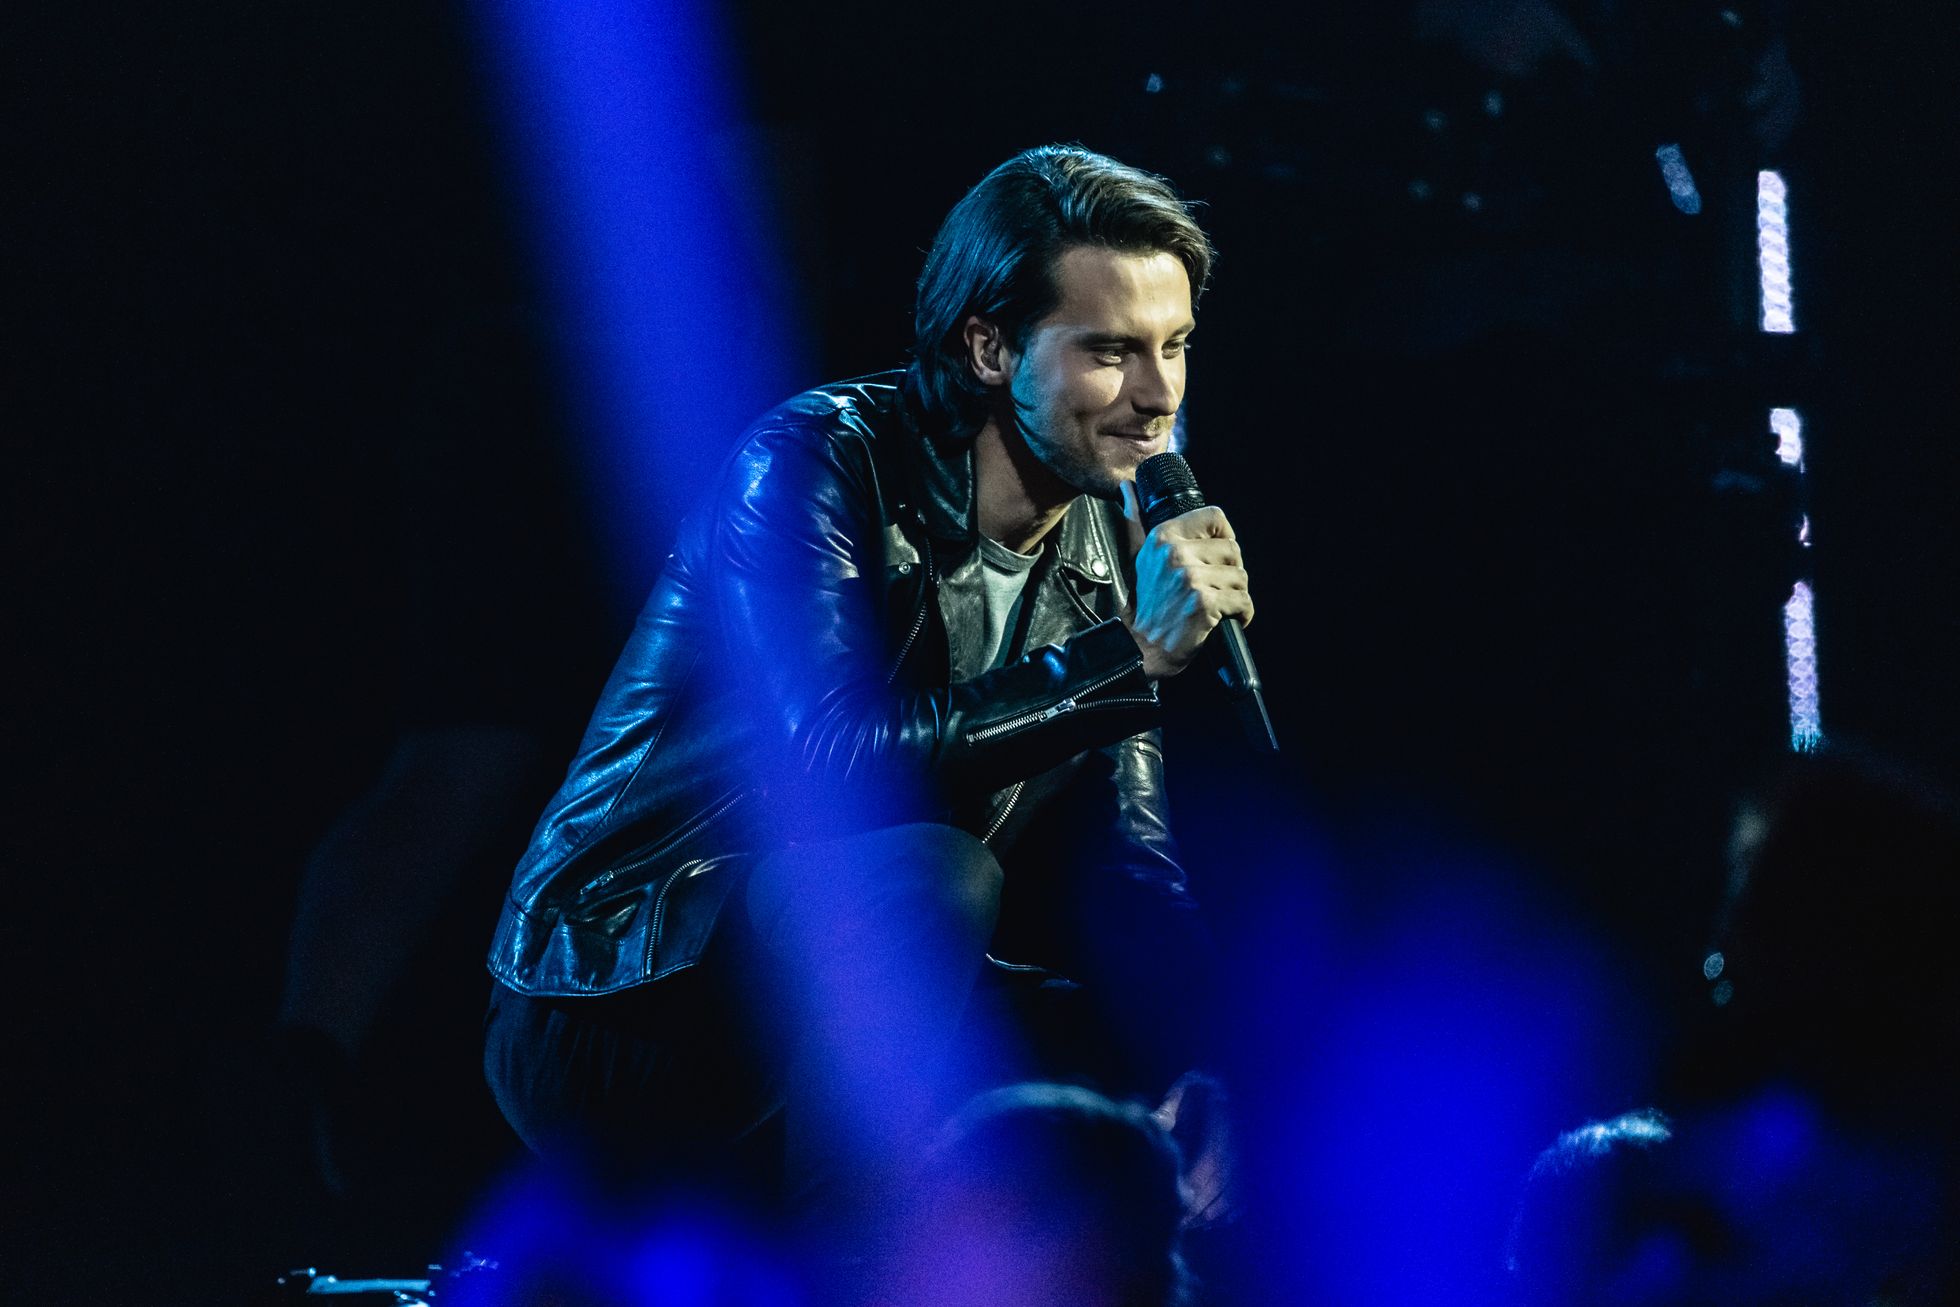 16. veebruar, laupäev: Eesti Laul 2019 finaali peaproov. Victor astus lavale kolmandana, see oli viimane proov enne õhtust suurt finaalkontserti. 